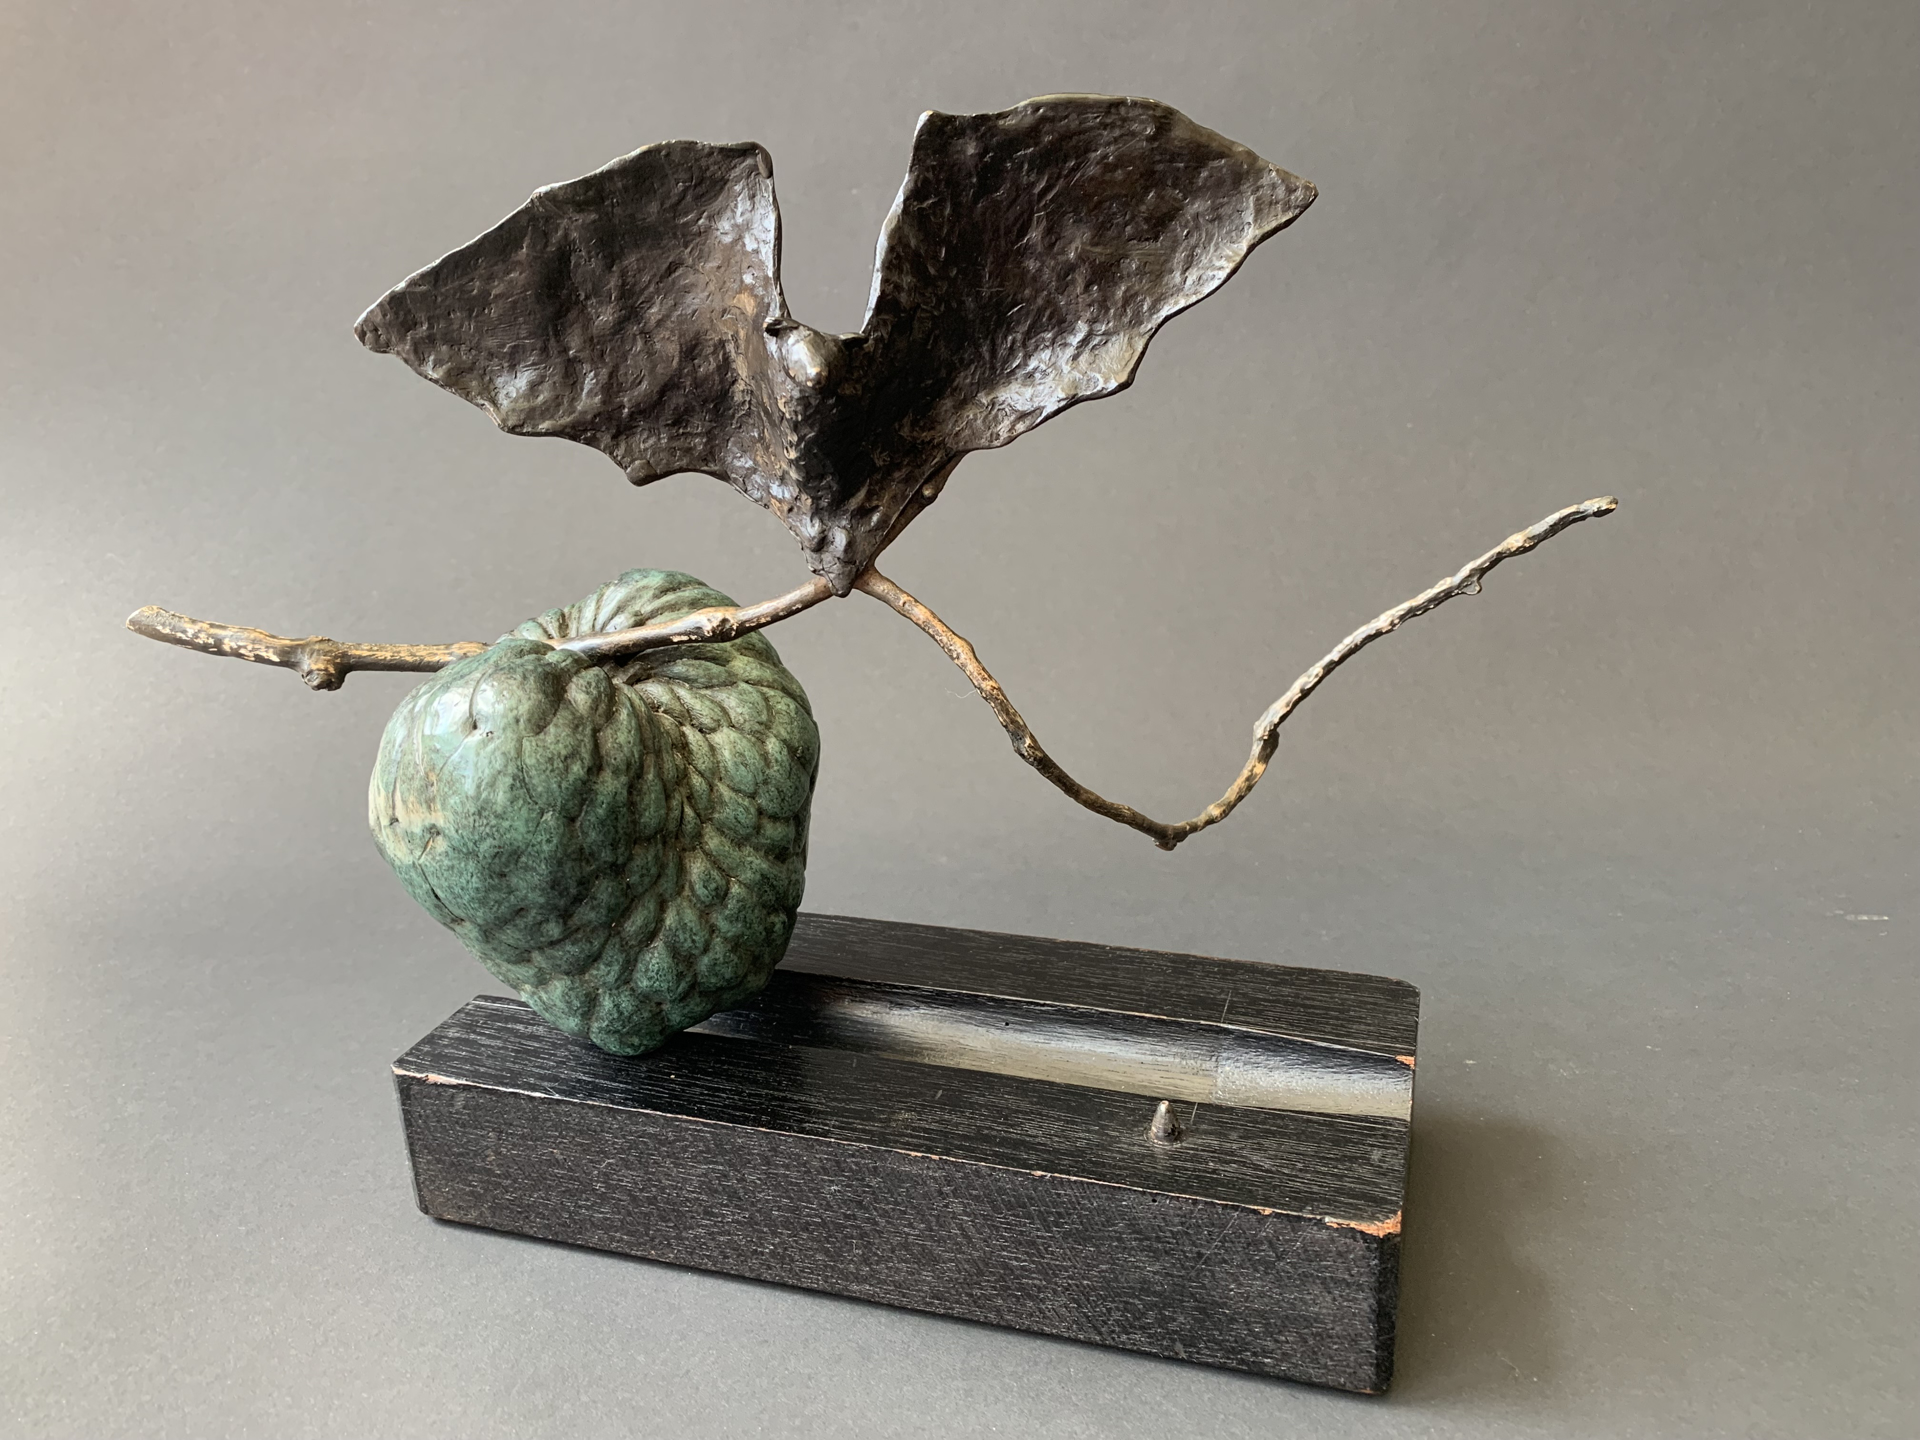 Fruit Bat with Sugar Apple by Copper Tritscheller